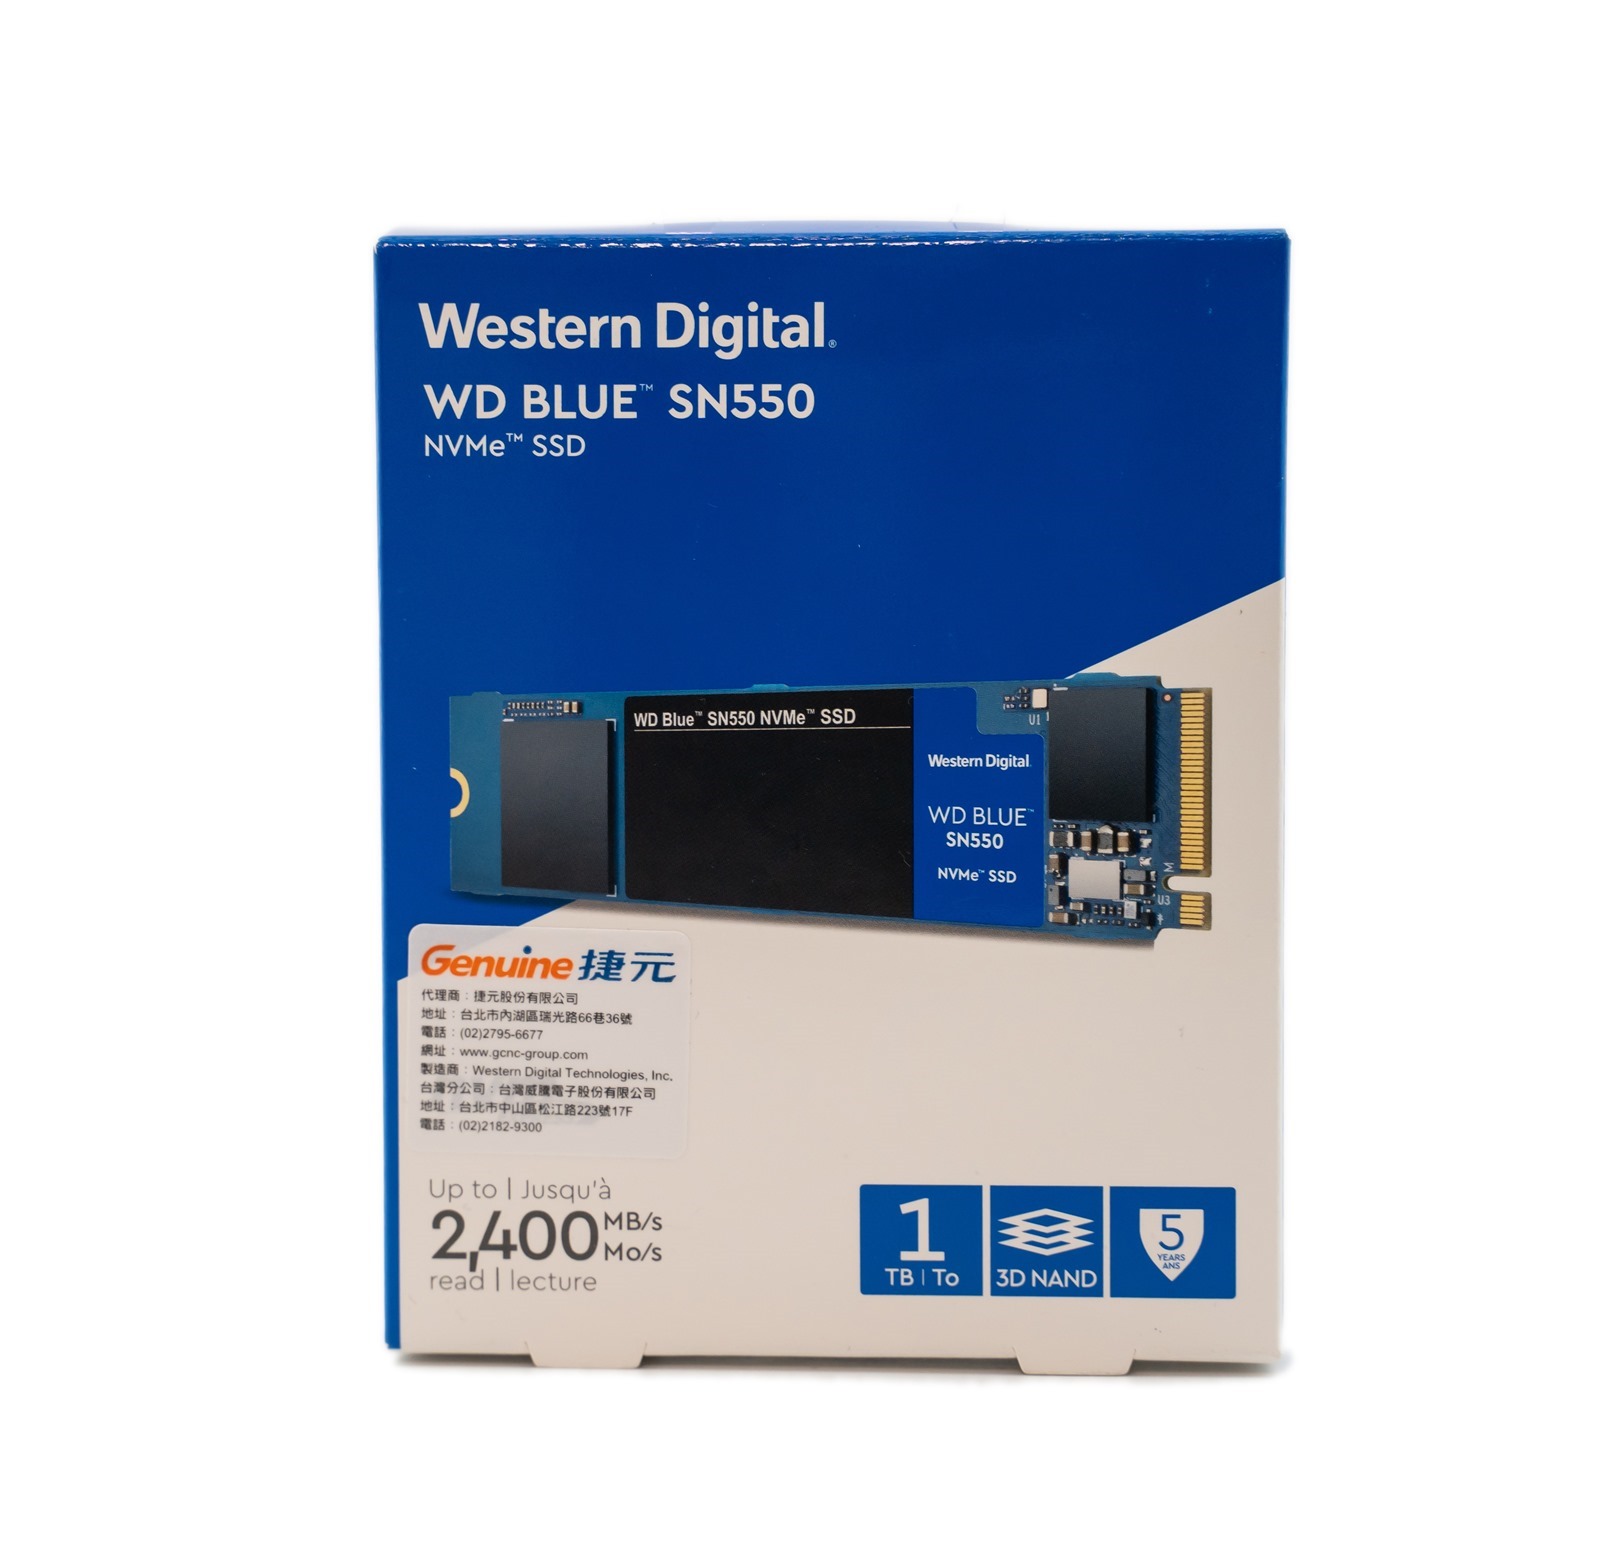 平價高性能WD Blue SN550 NVMe SSD 電腦裝機升級首選@3C 達人廖阿輝